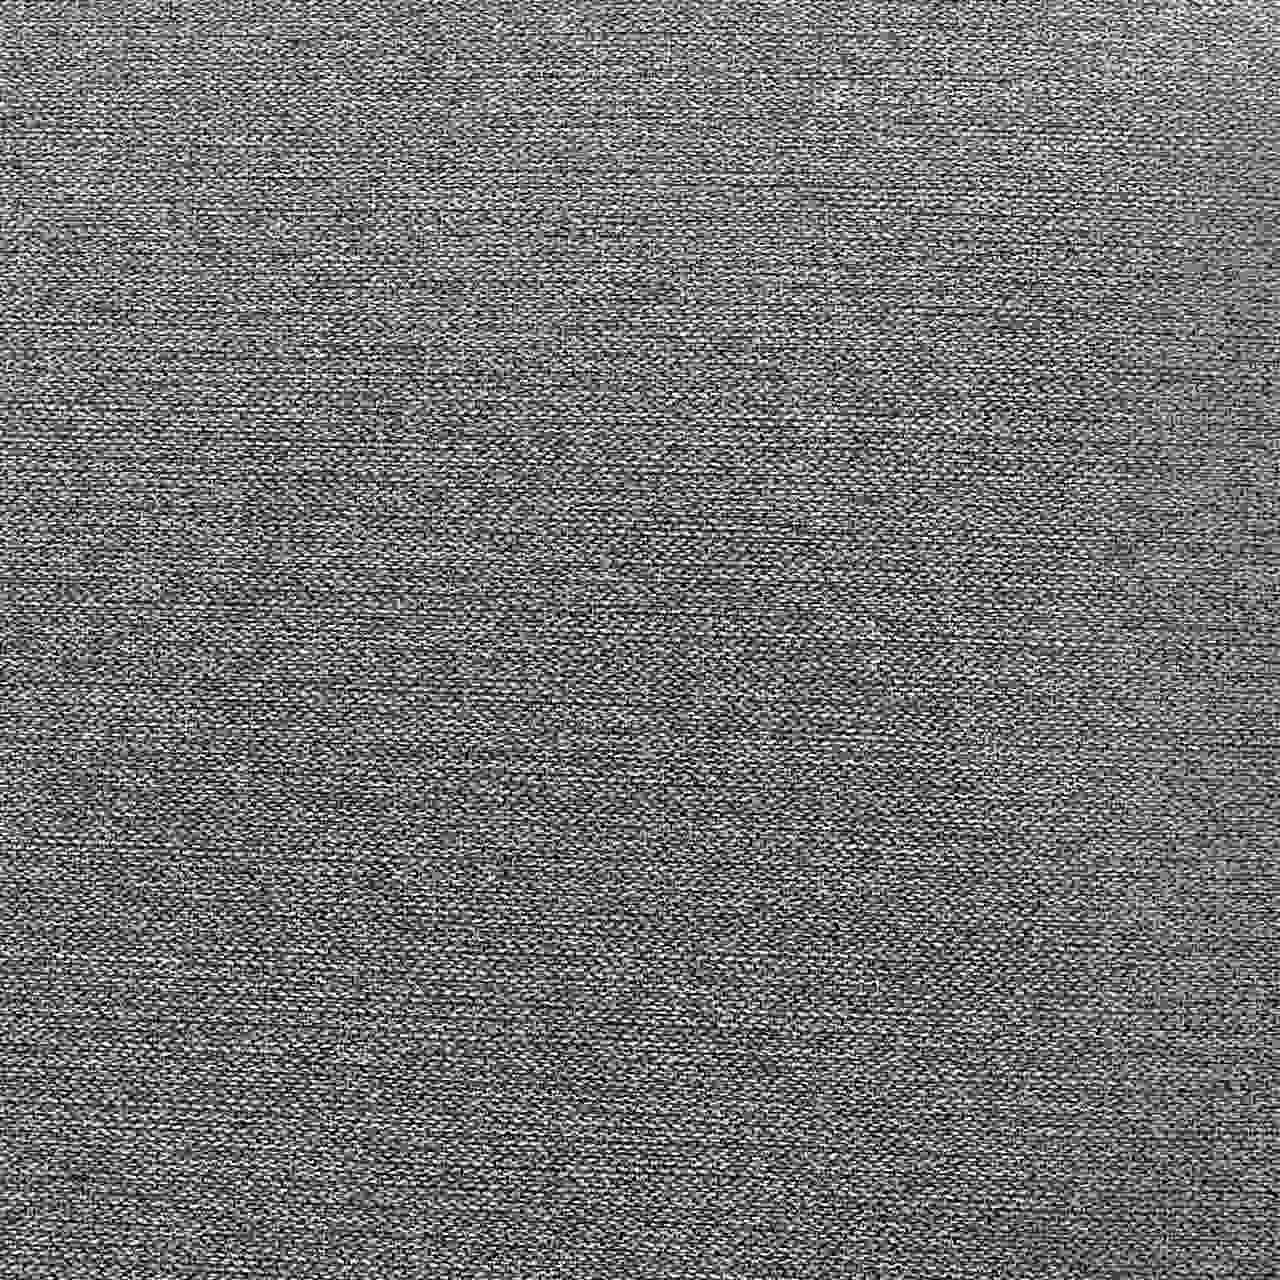 sofa-cama-lipo-trama-larga-grafite-mesclado-202-detalhes-tecido